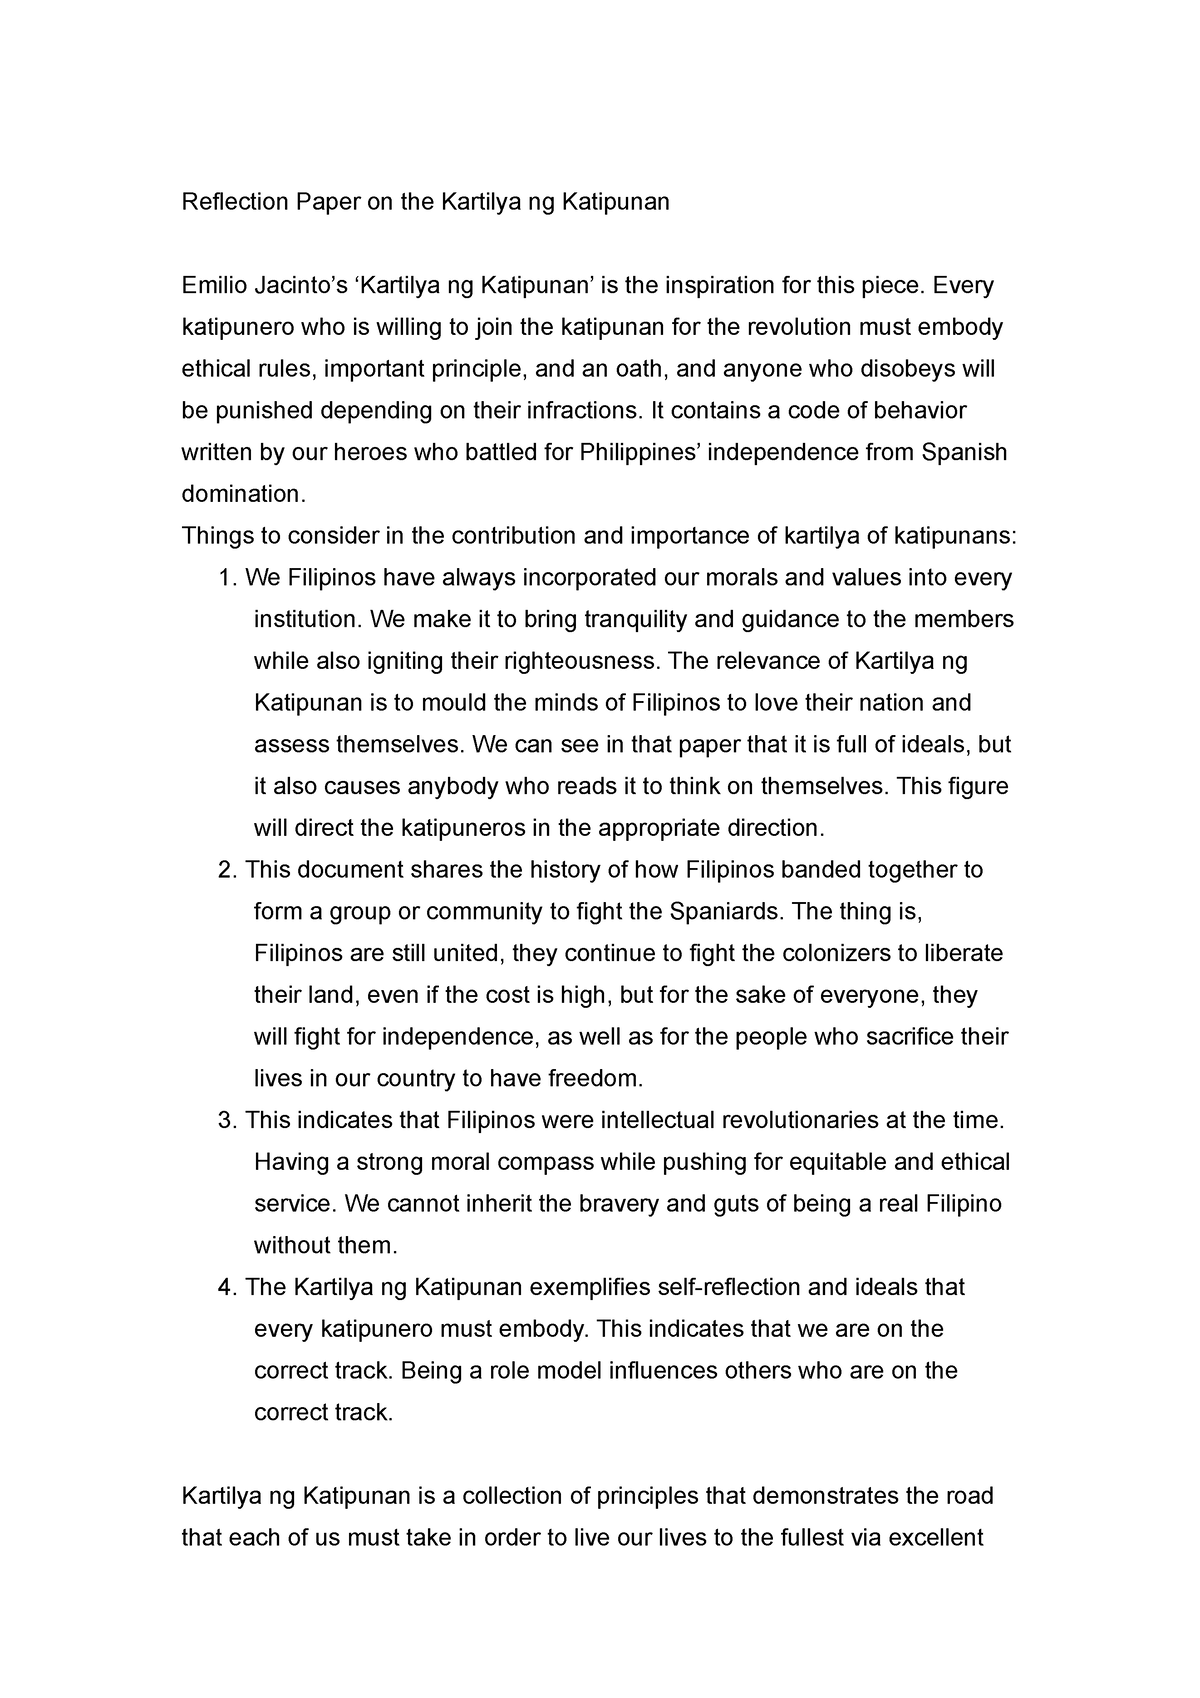 critical essay about the kkk and the kartilya ng katipunan